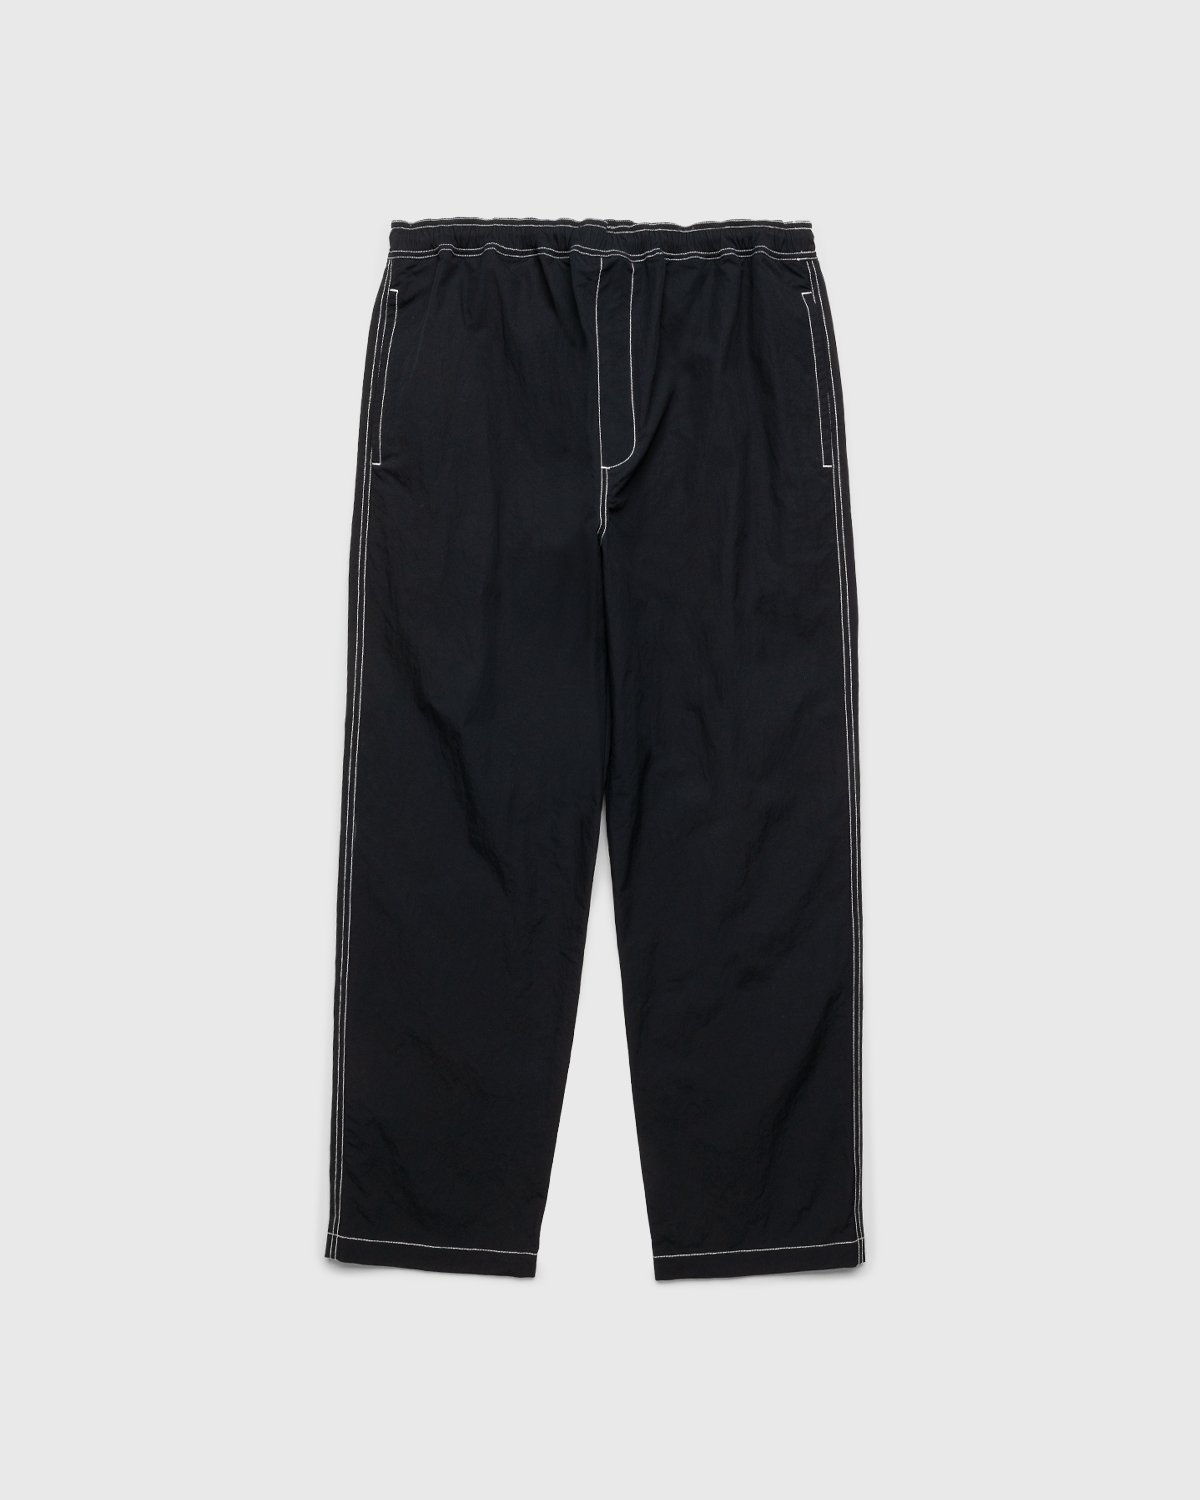 Highsnobiety - Contrast Brushed Nylon Elastic Pants Black - Clothing - Black - Image 1